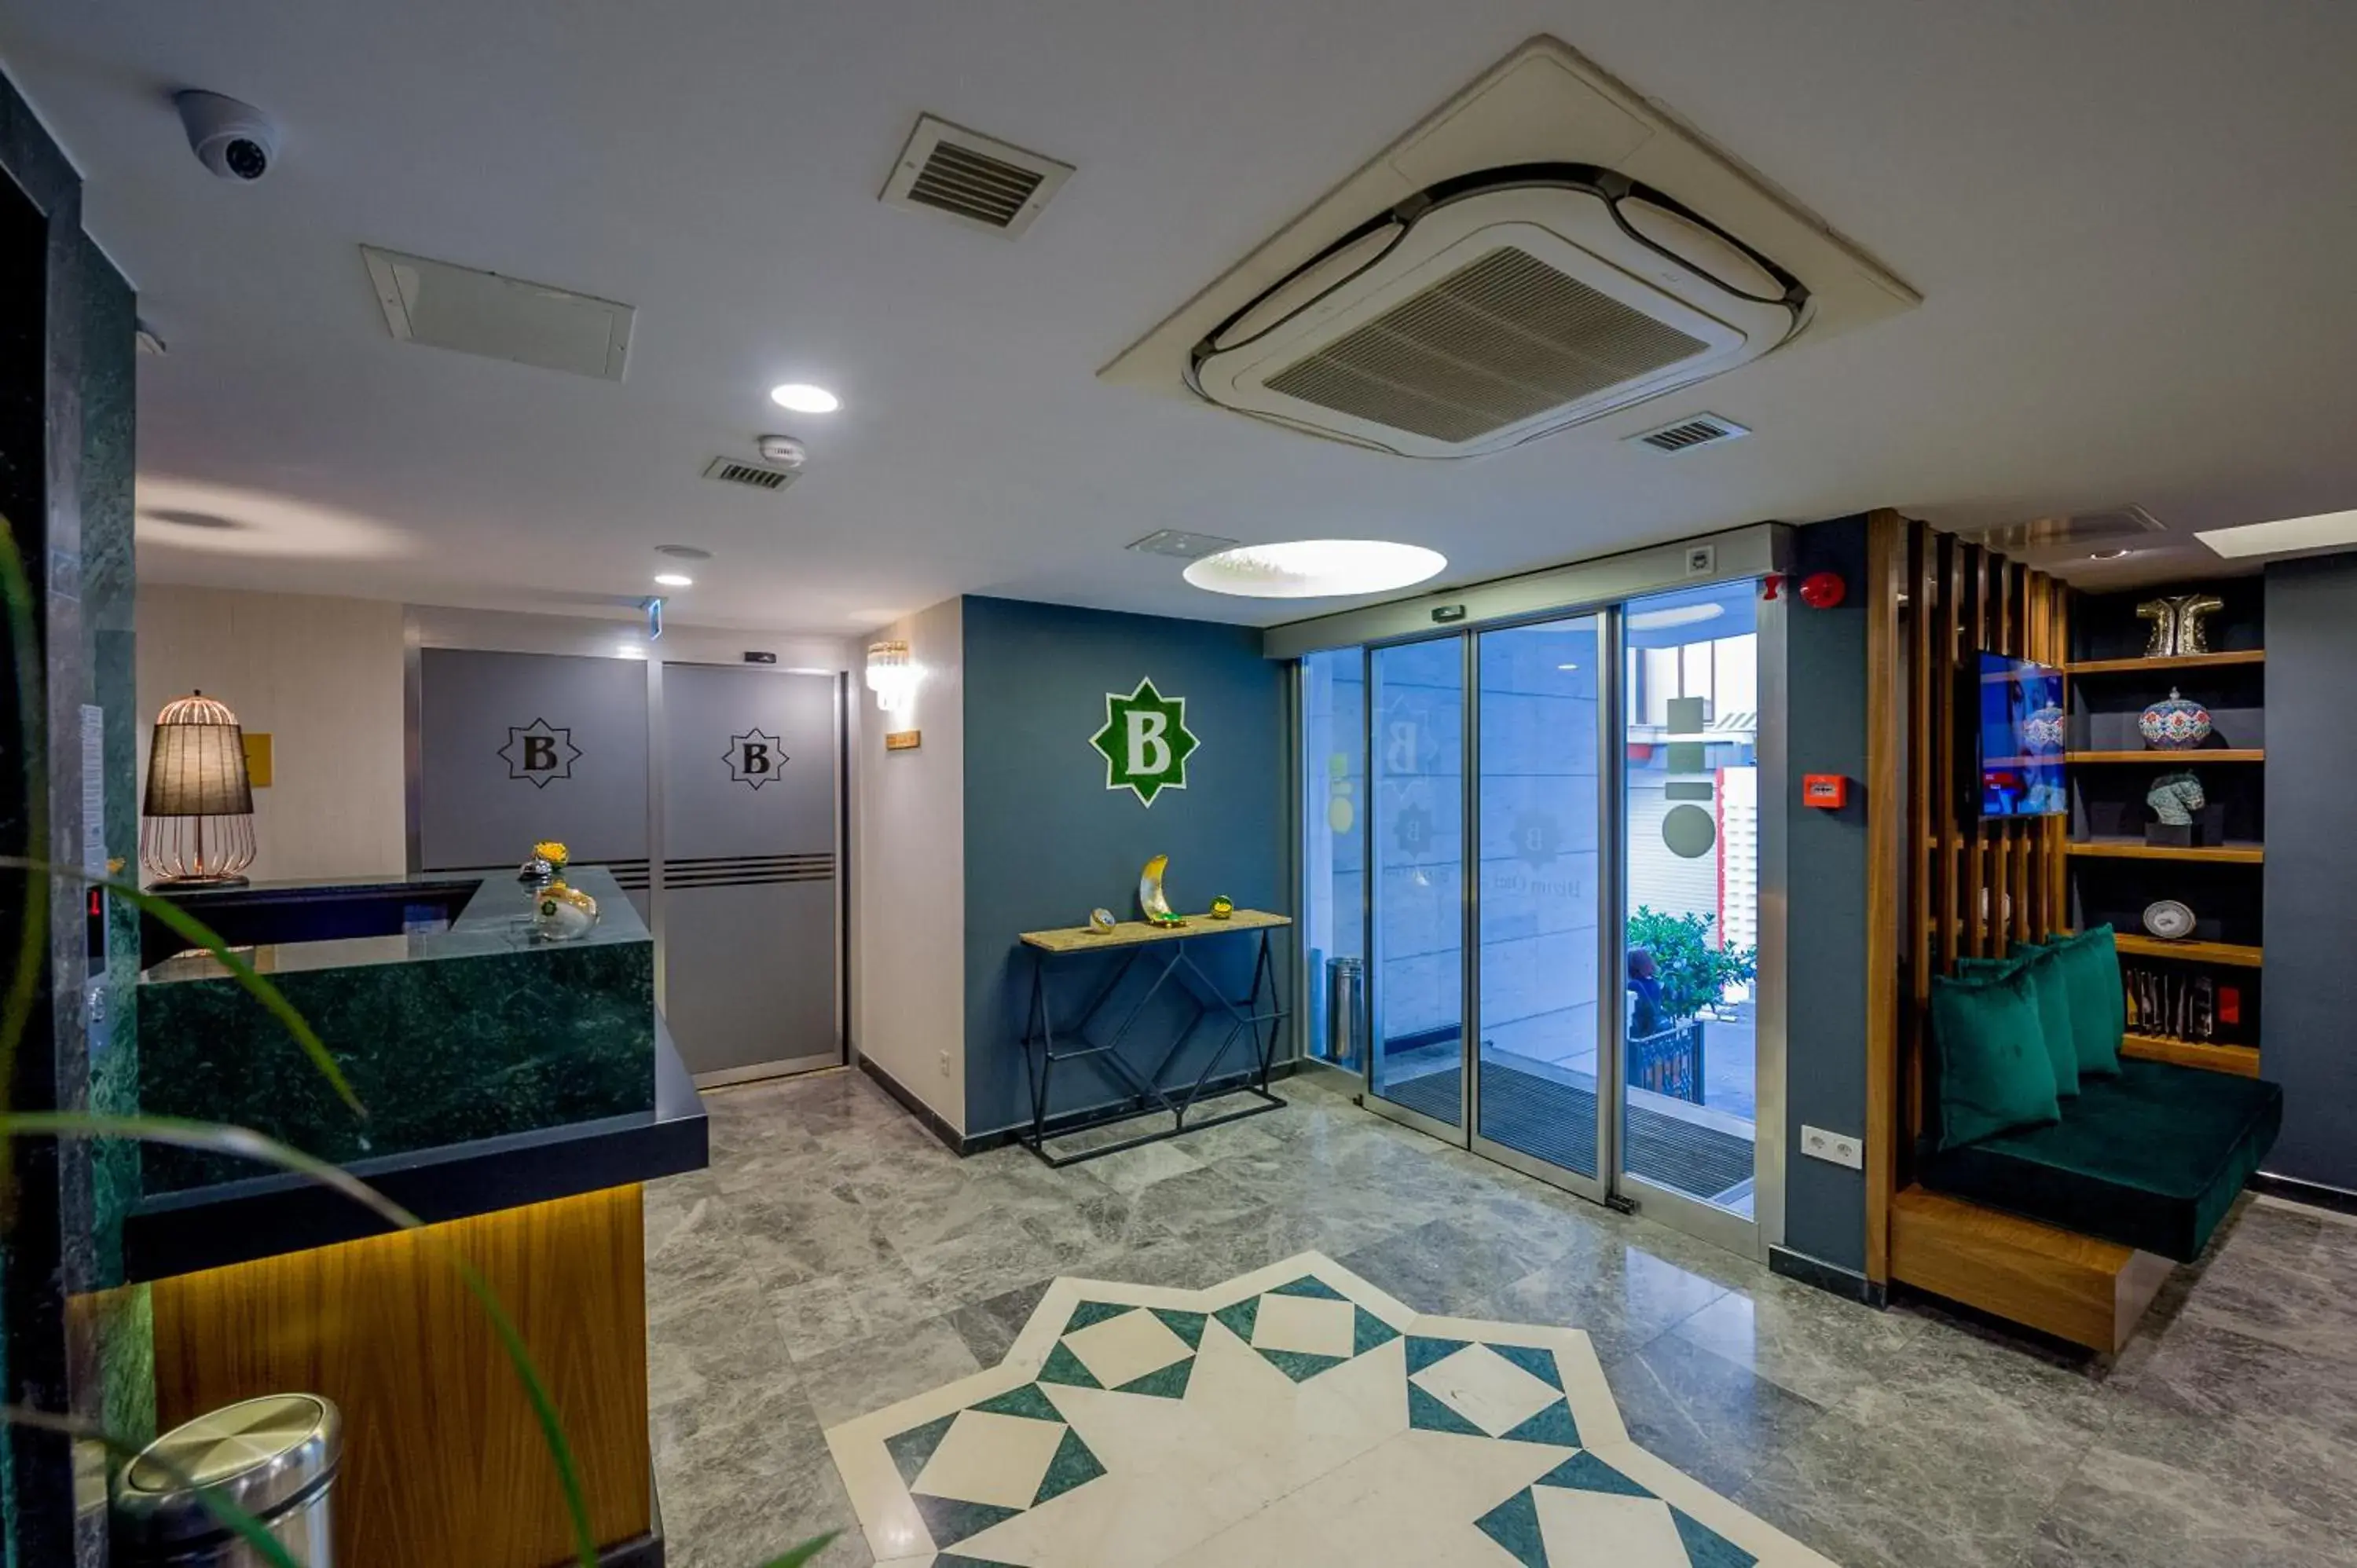 Lobby or reception, Lobby/Reception in Bizim Hotel